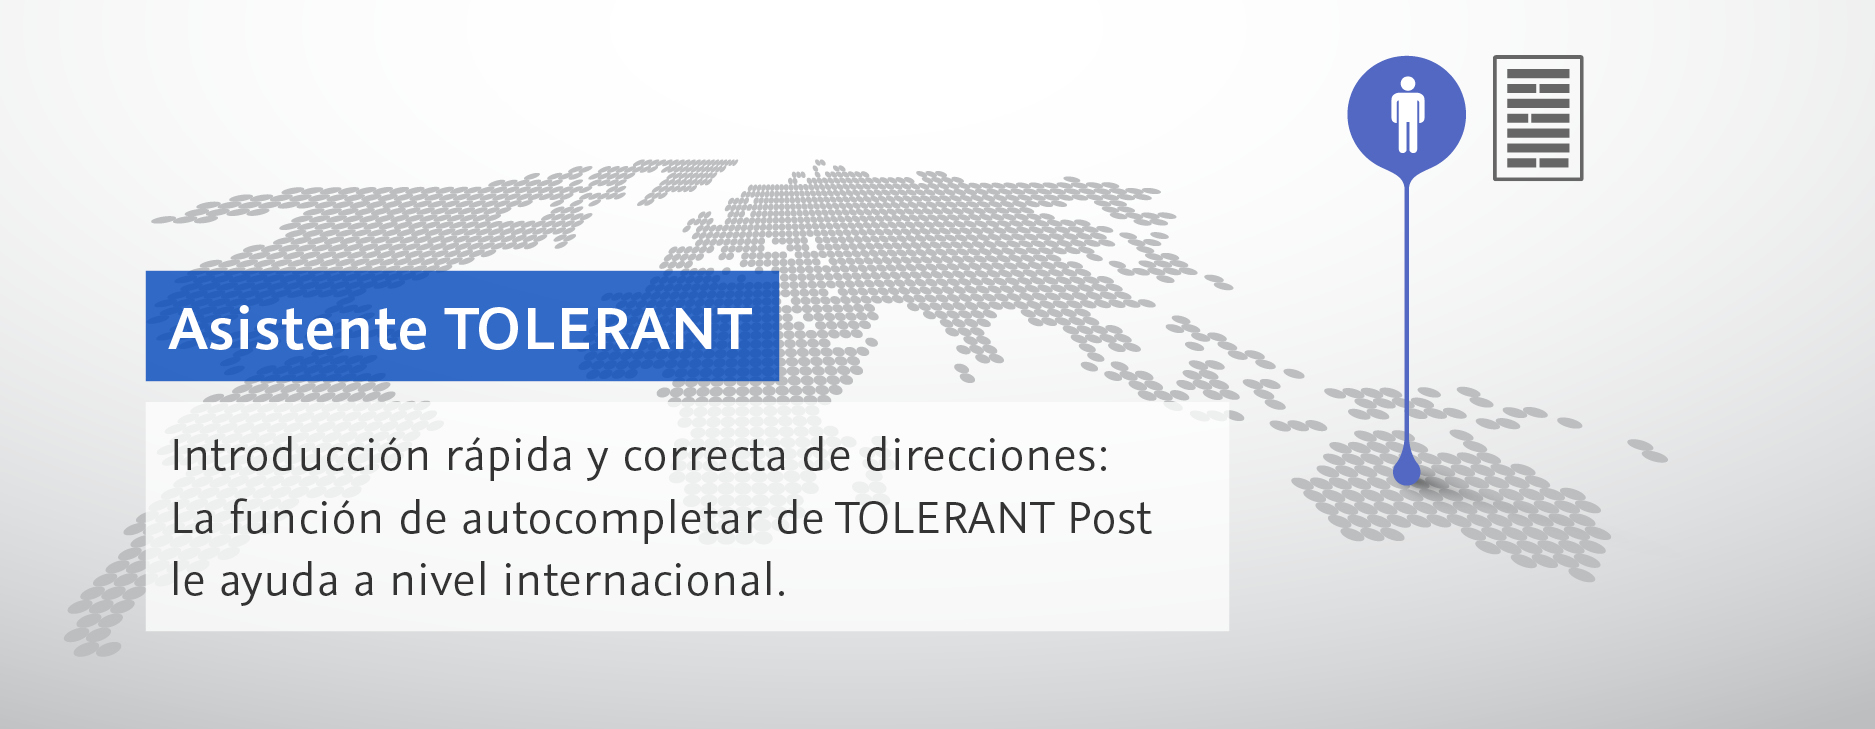 Asistente TOLERANT. Introducción rápida y correcta de direcciones: La función de autocompletar de TOLERANT Post le ayuda a nivel internacional.